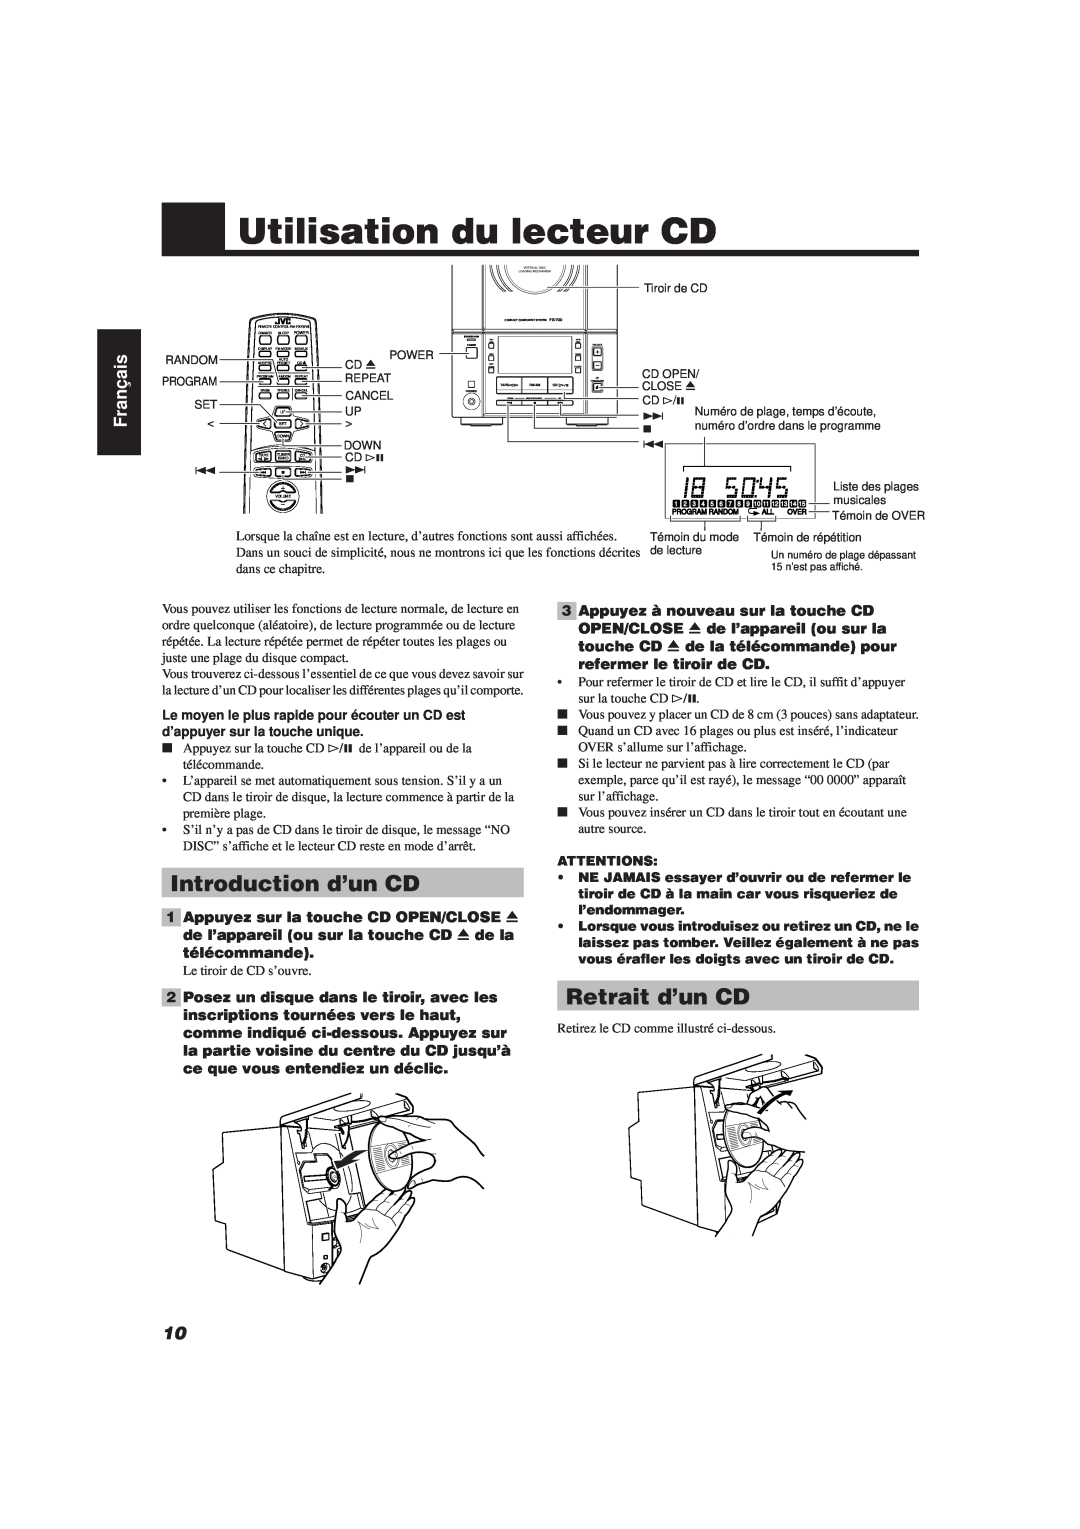 JVC FS-V30 manual Utilisation du lecteur CD, Introduction d’un CD, Retrait d’un CD, Français 